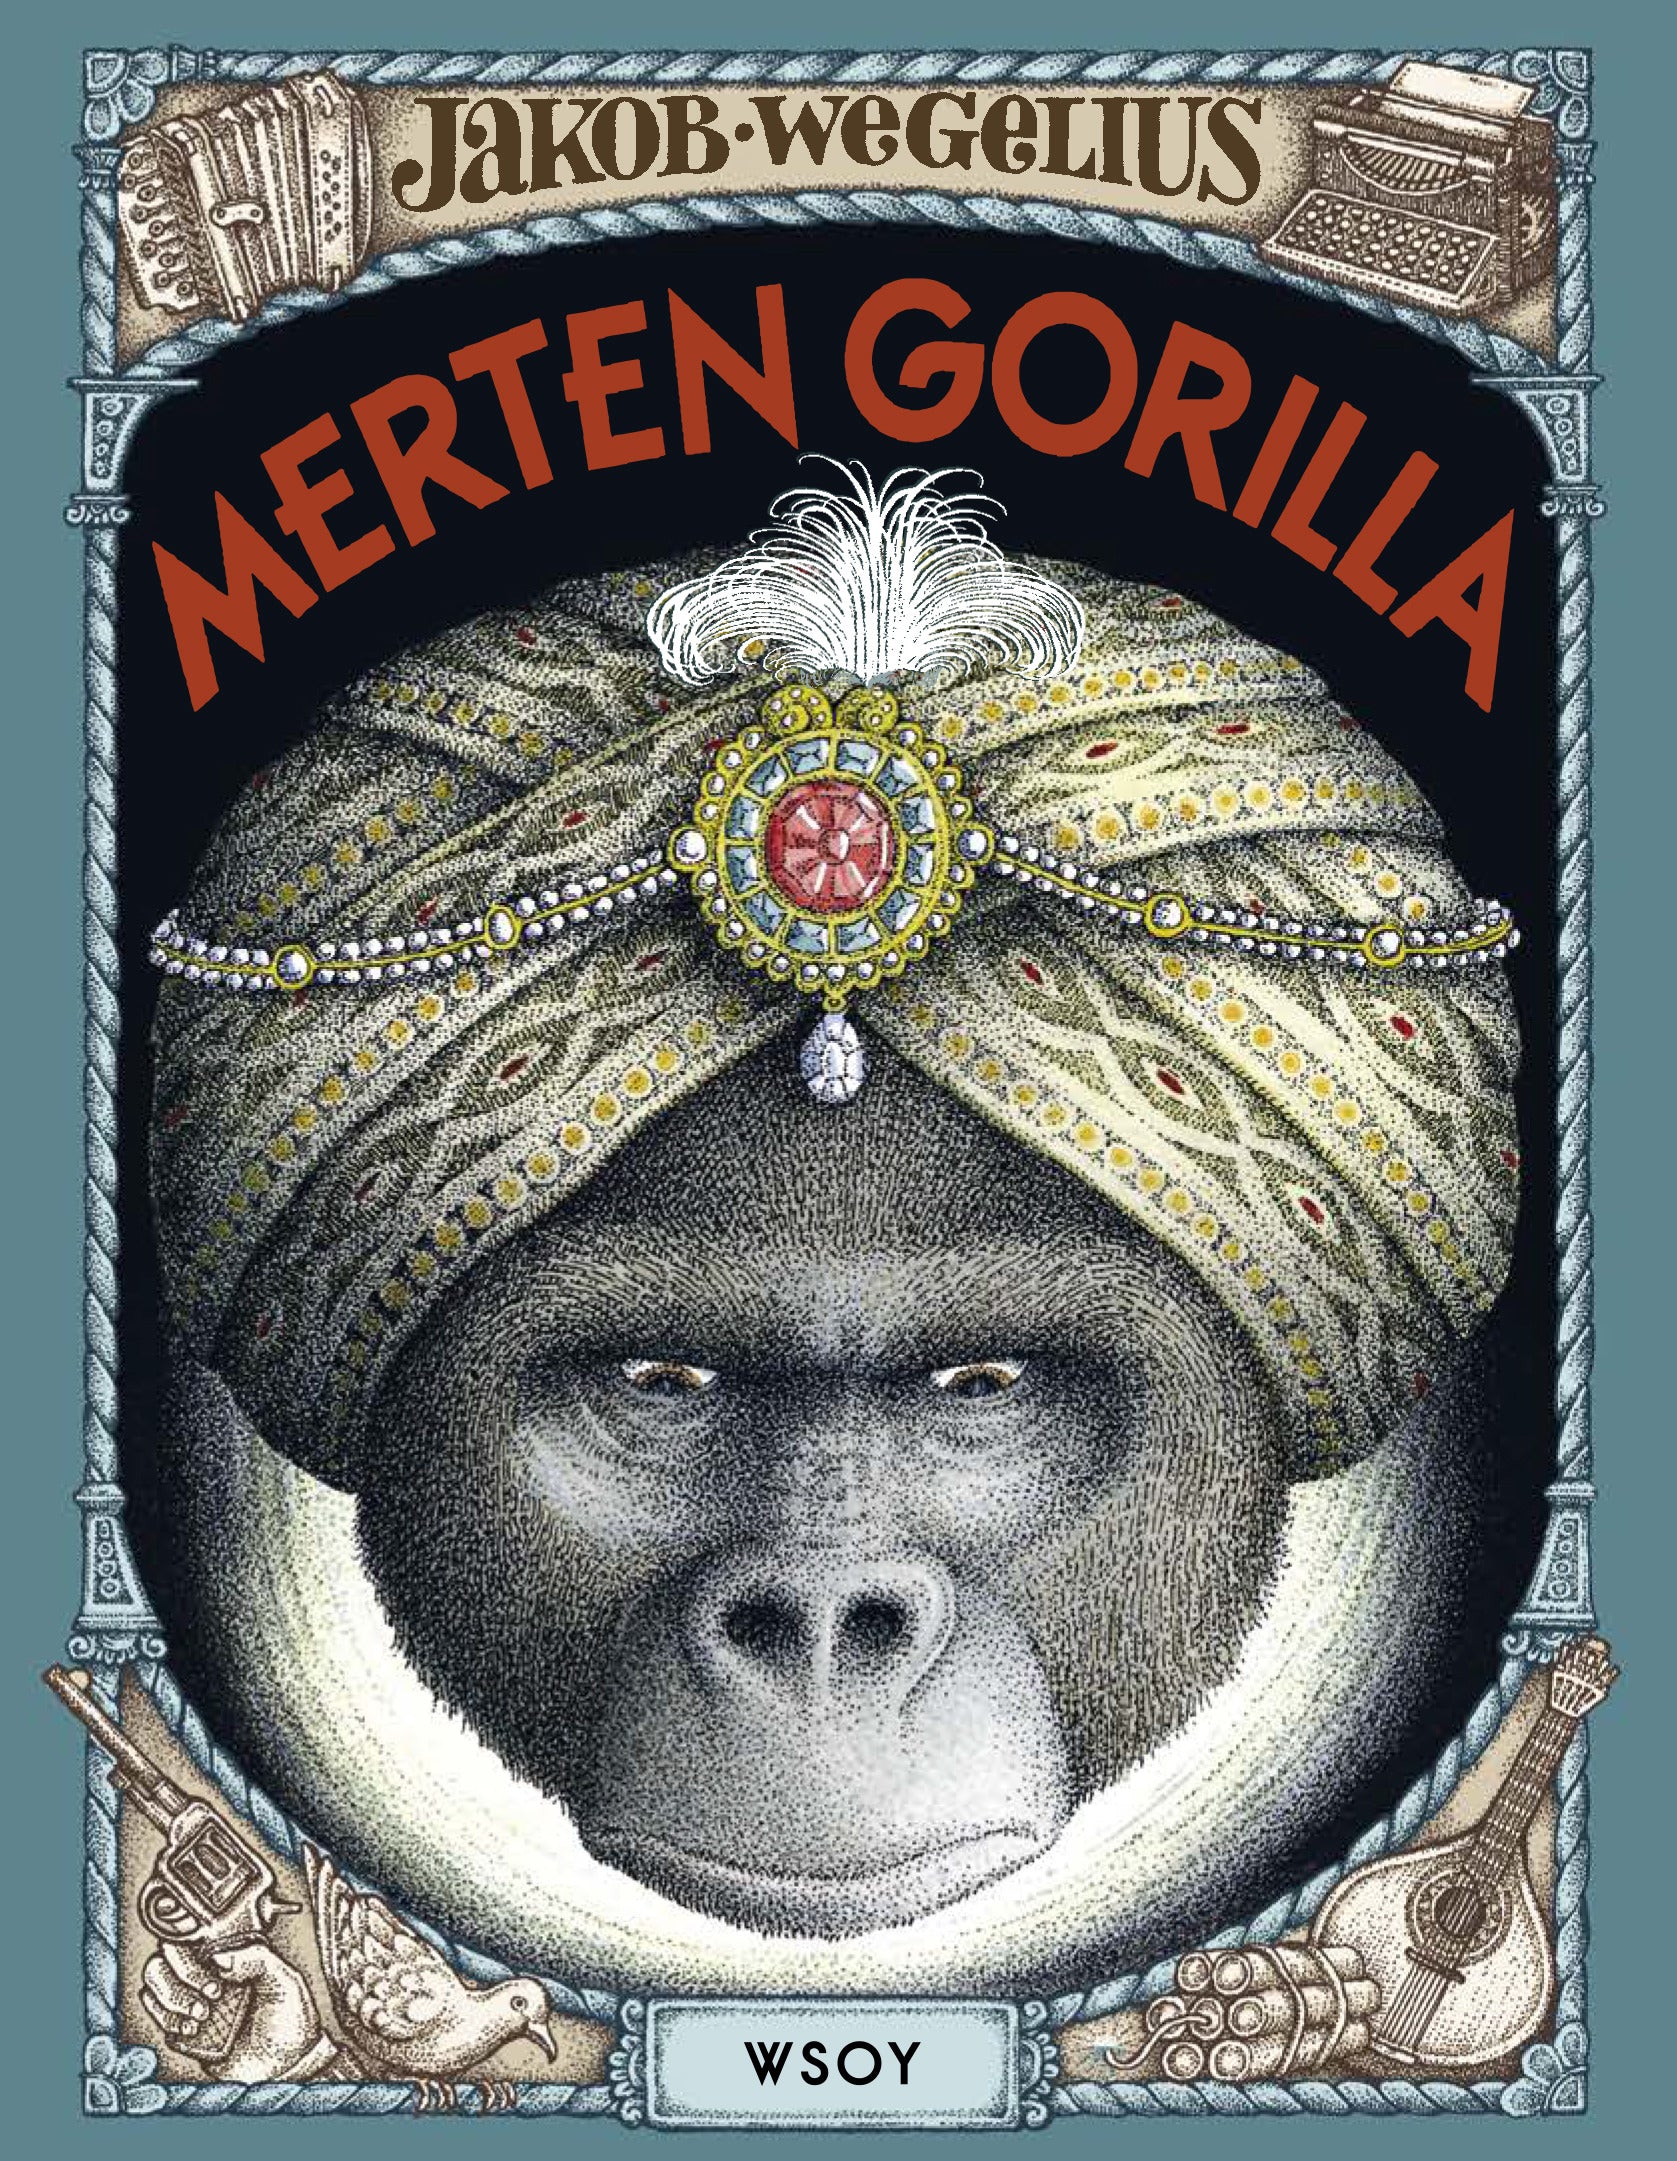 Merten gorilla – Jakob Wegelius – Kirja-verkkokauppa